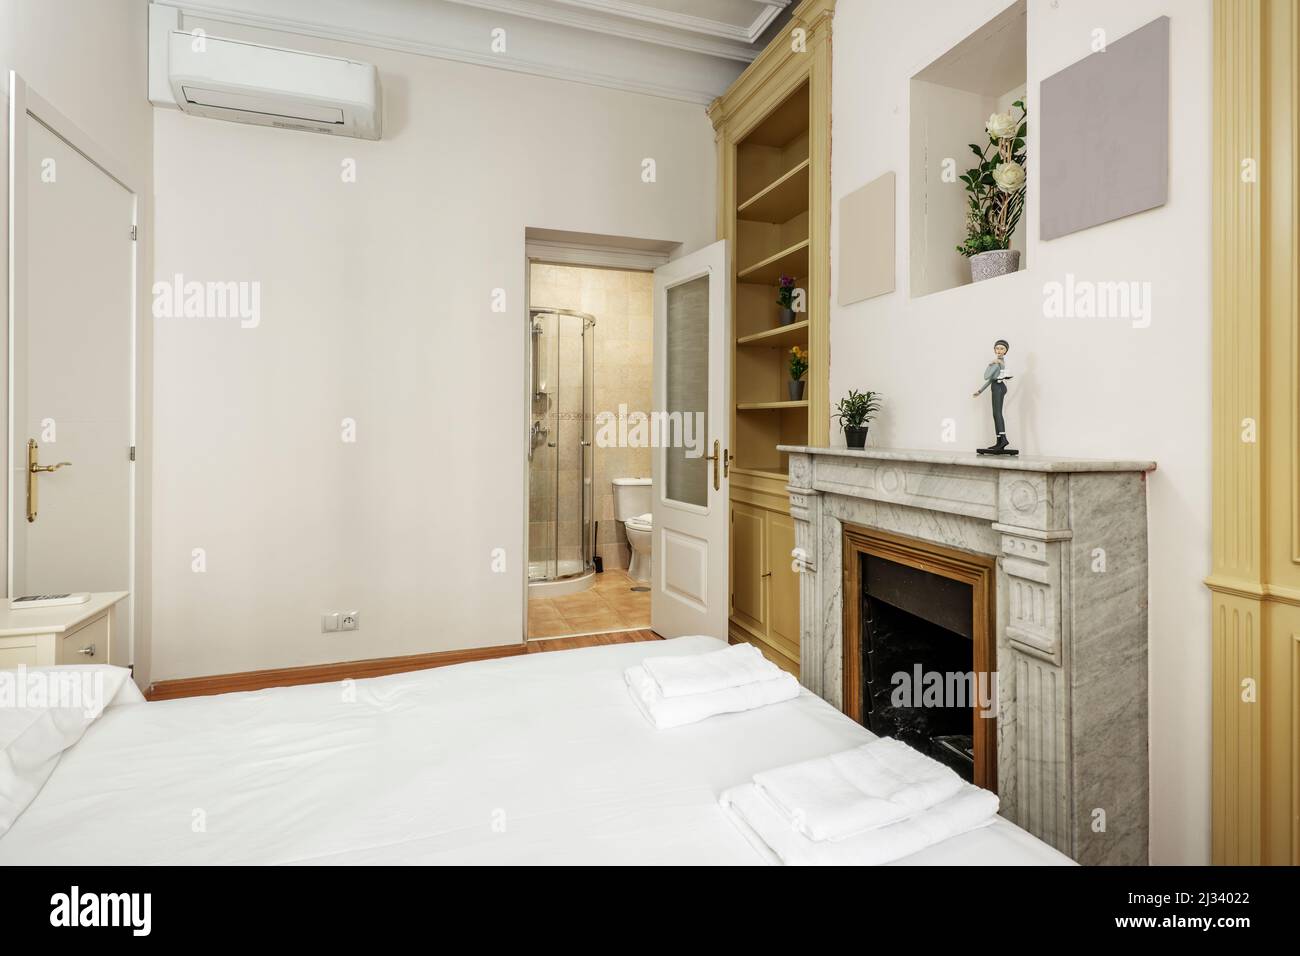 Camera con letto matrimoniale, aria condizionata, camino in marmo bianco, ripiani in legno e cabina doccia in bagno privato Foto Stock